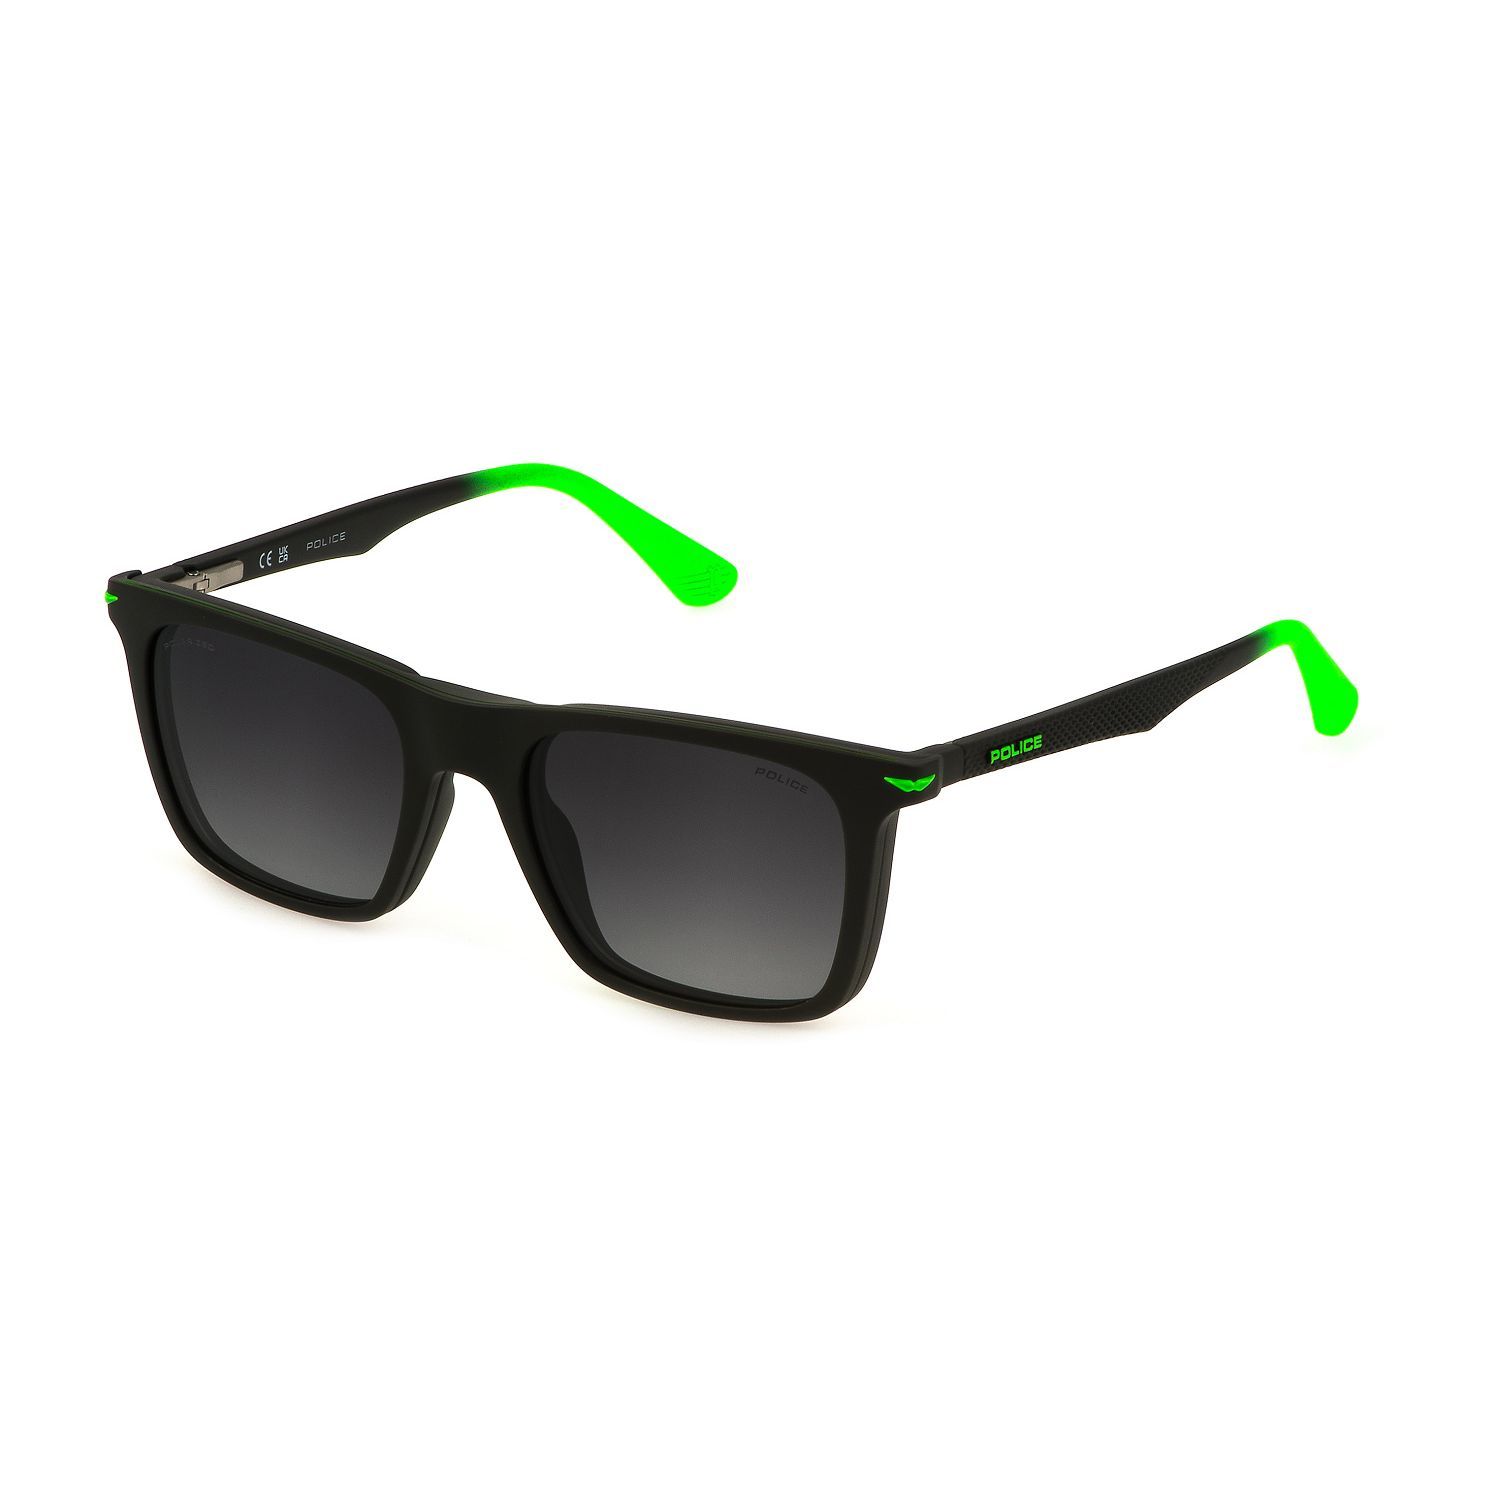 UK136 Square Sunglasses B81P - size 50